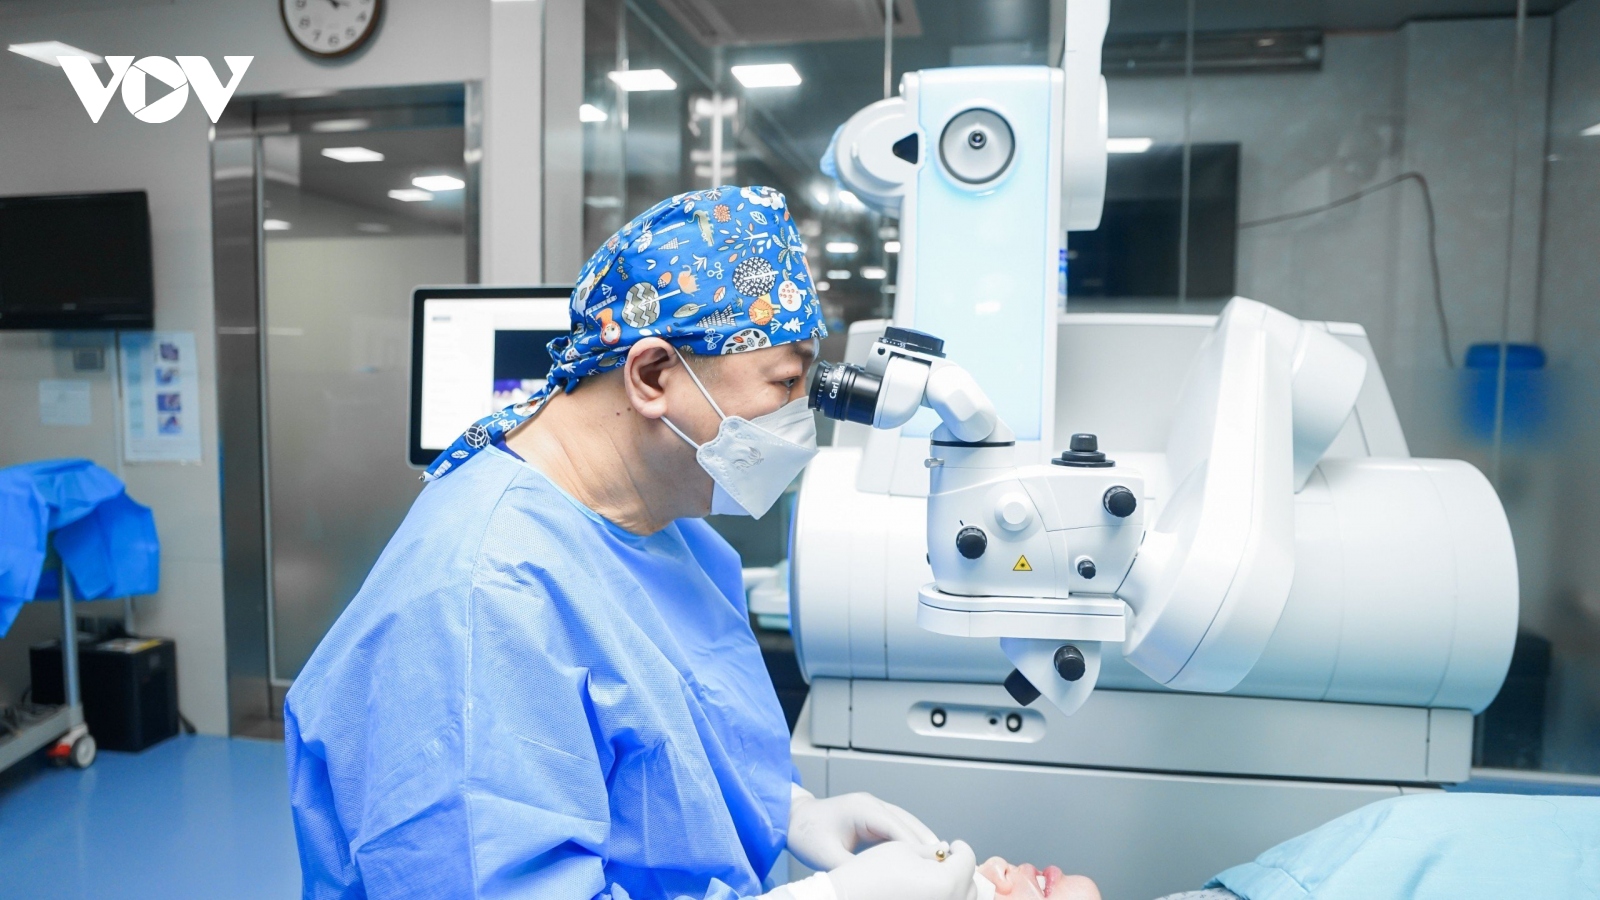 BV Mắt quốc tế DND sở hữu máy phẫu thuật khúc xạ hiện đại nhất thế giới VISUMAX 800